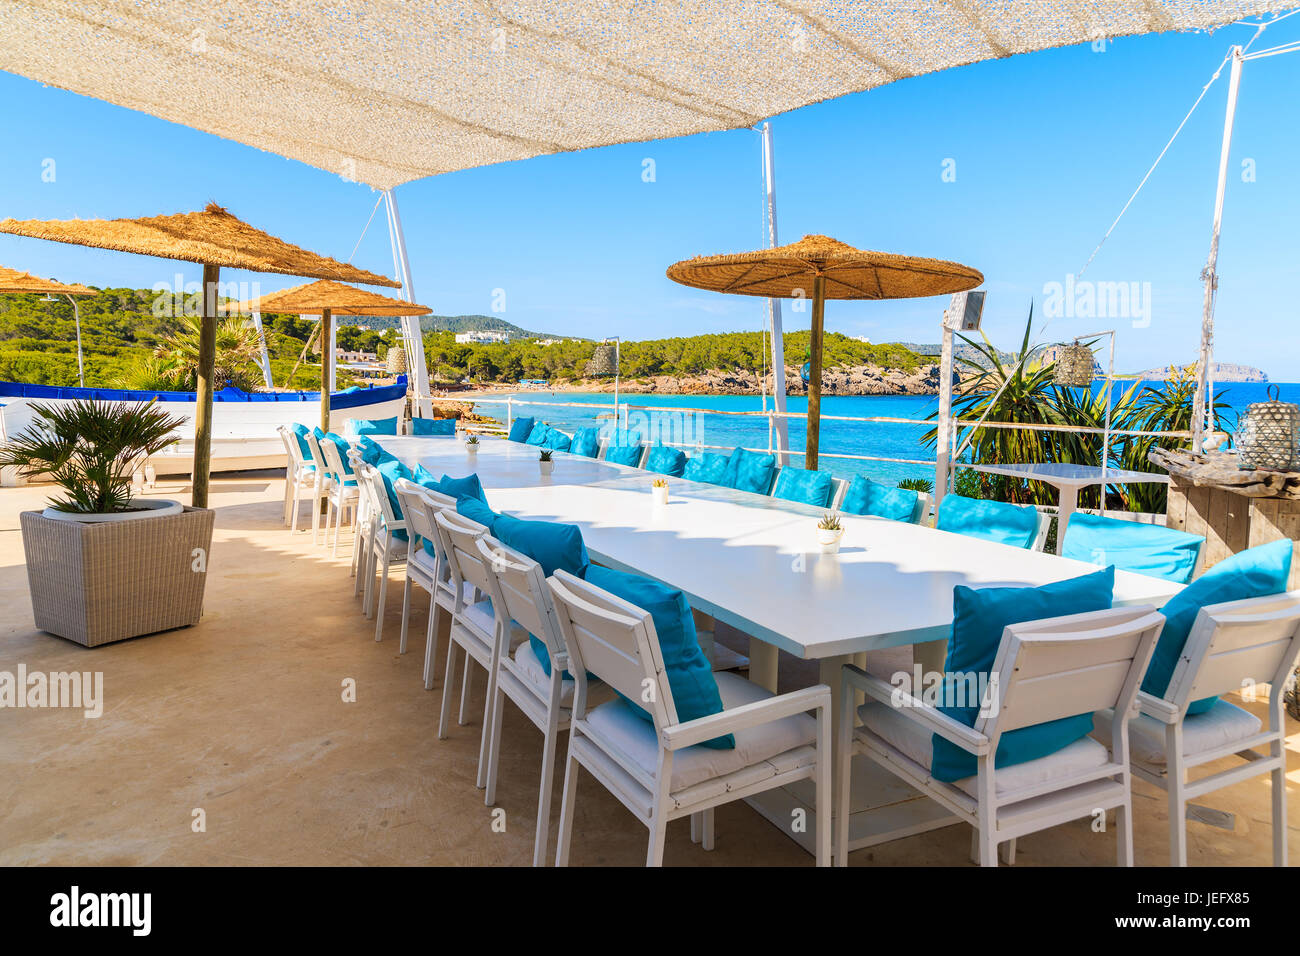 Strand von CALA NOVA, Insel IBIZA - 20. Mai 2017: Weißen Tisch und Stühle mit blauen Kissen auf Restaurant-Terrasse am Strand von Cala Nova mit schönen Blick aufs Meer vie Stockfoto